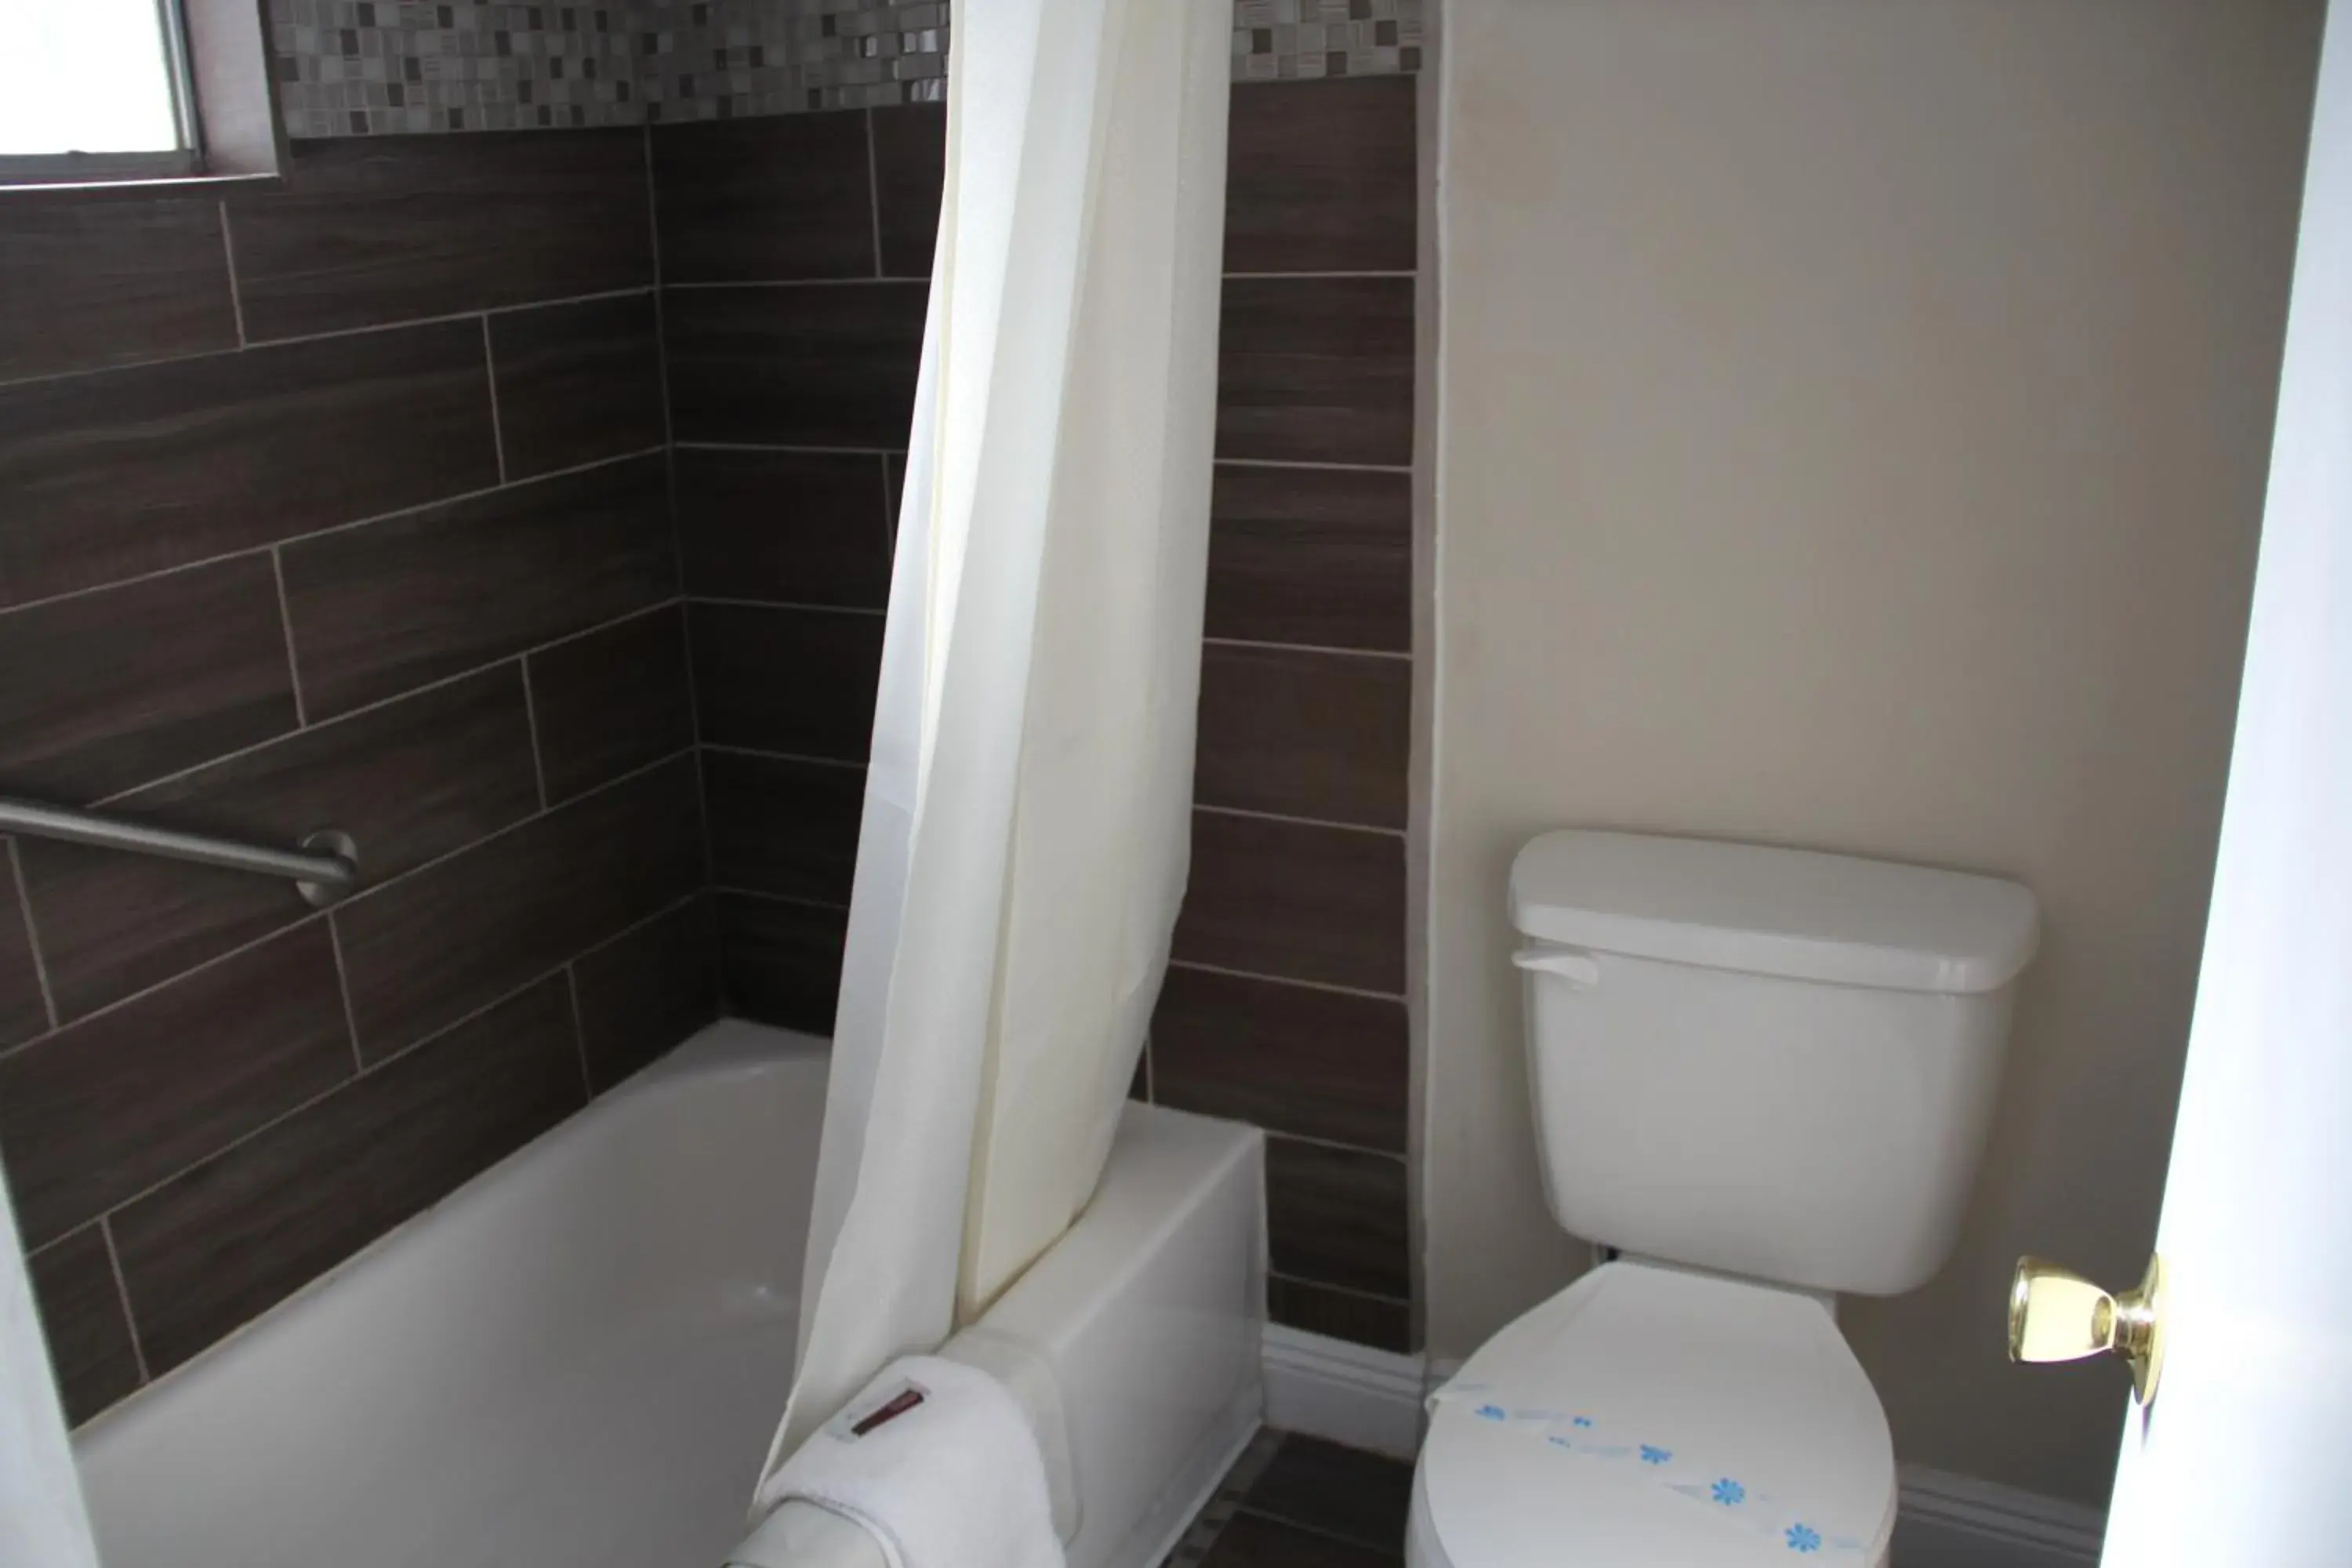 Toilet, Bathroom in Super Lodge Motel El Paso